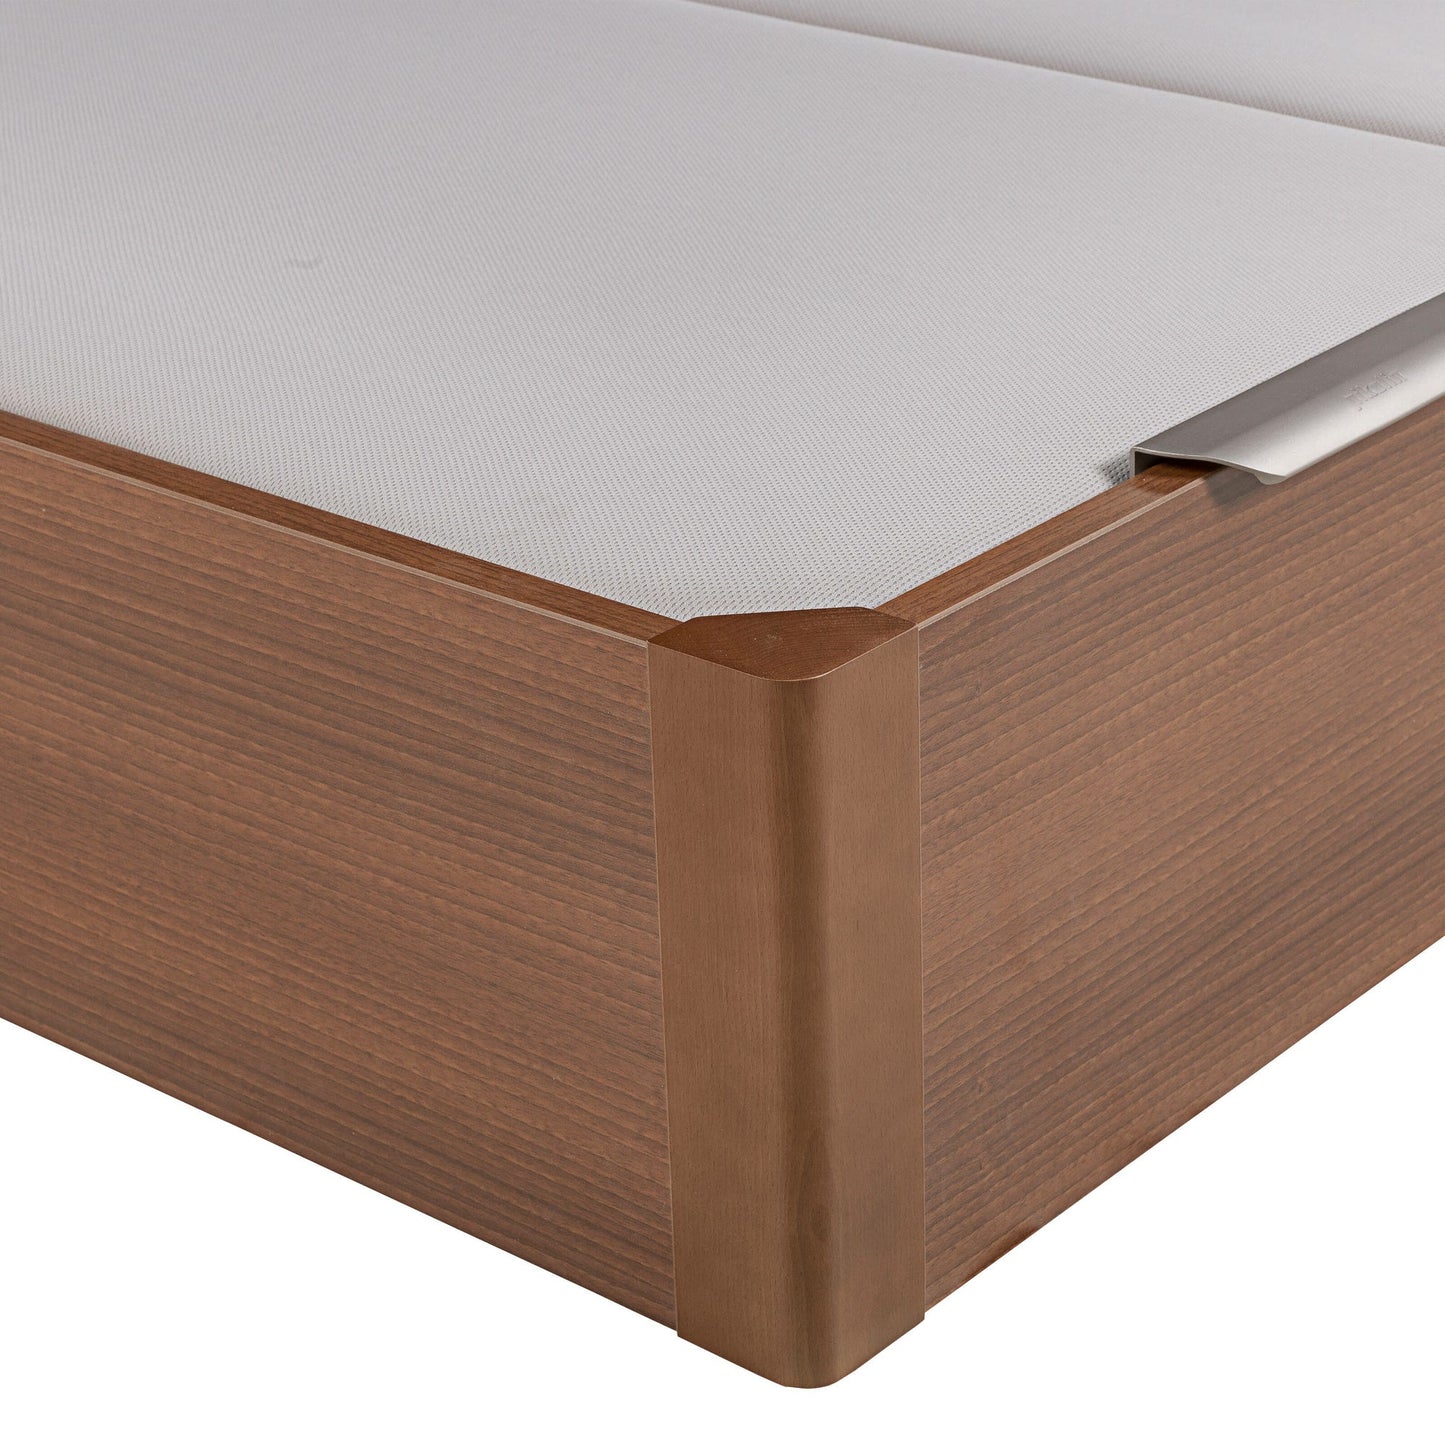 Canapé abatible de madera de tapa doble de color cerezo - DESIGN - 180x210